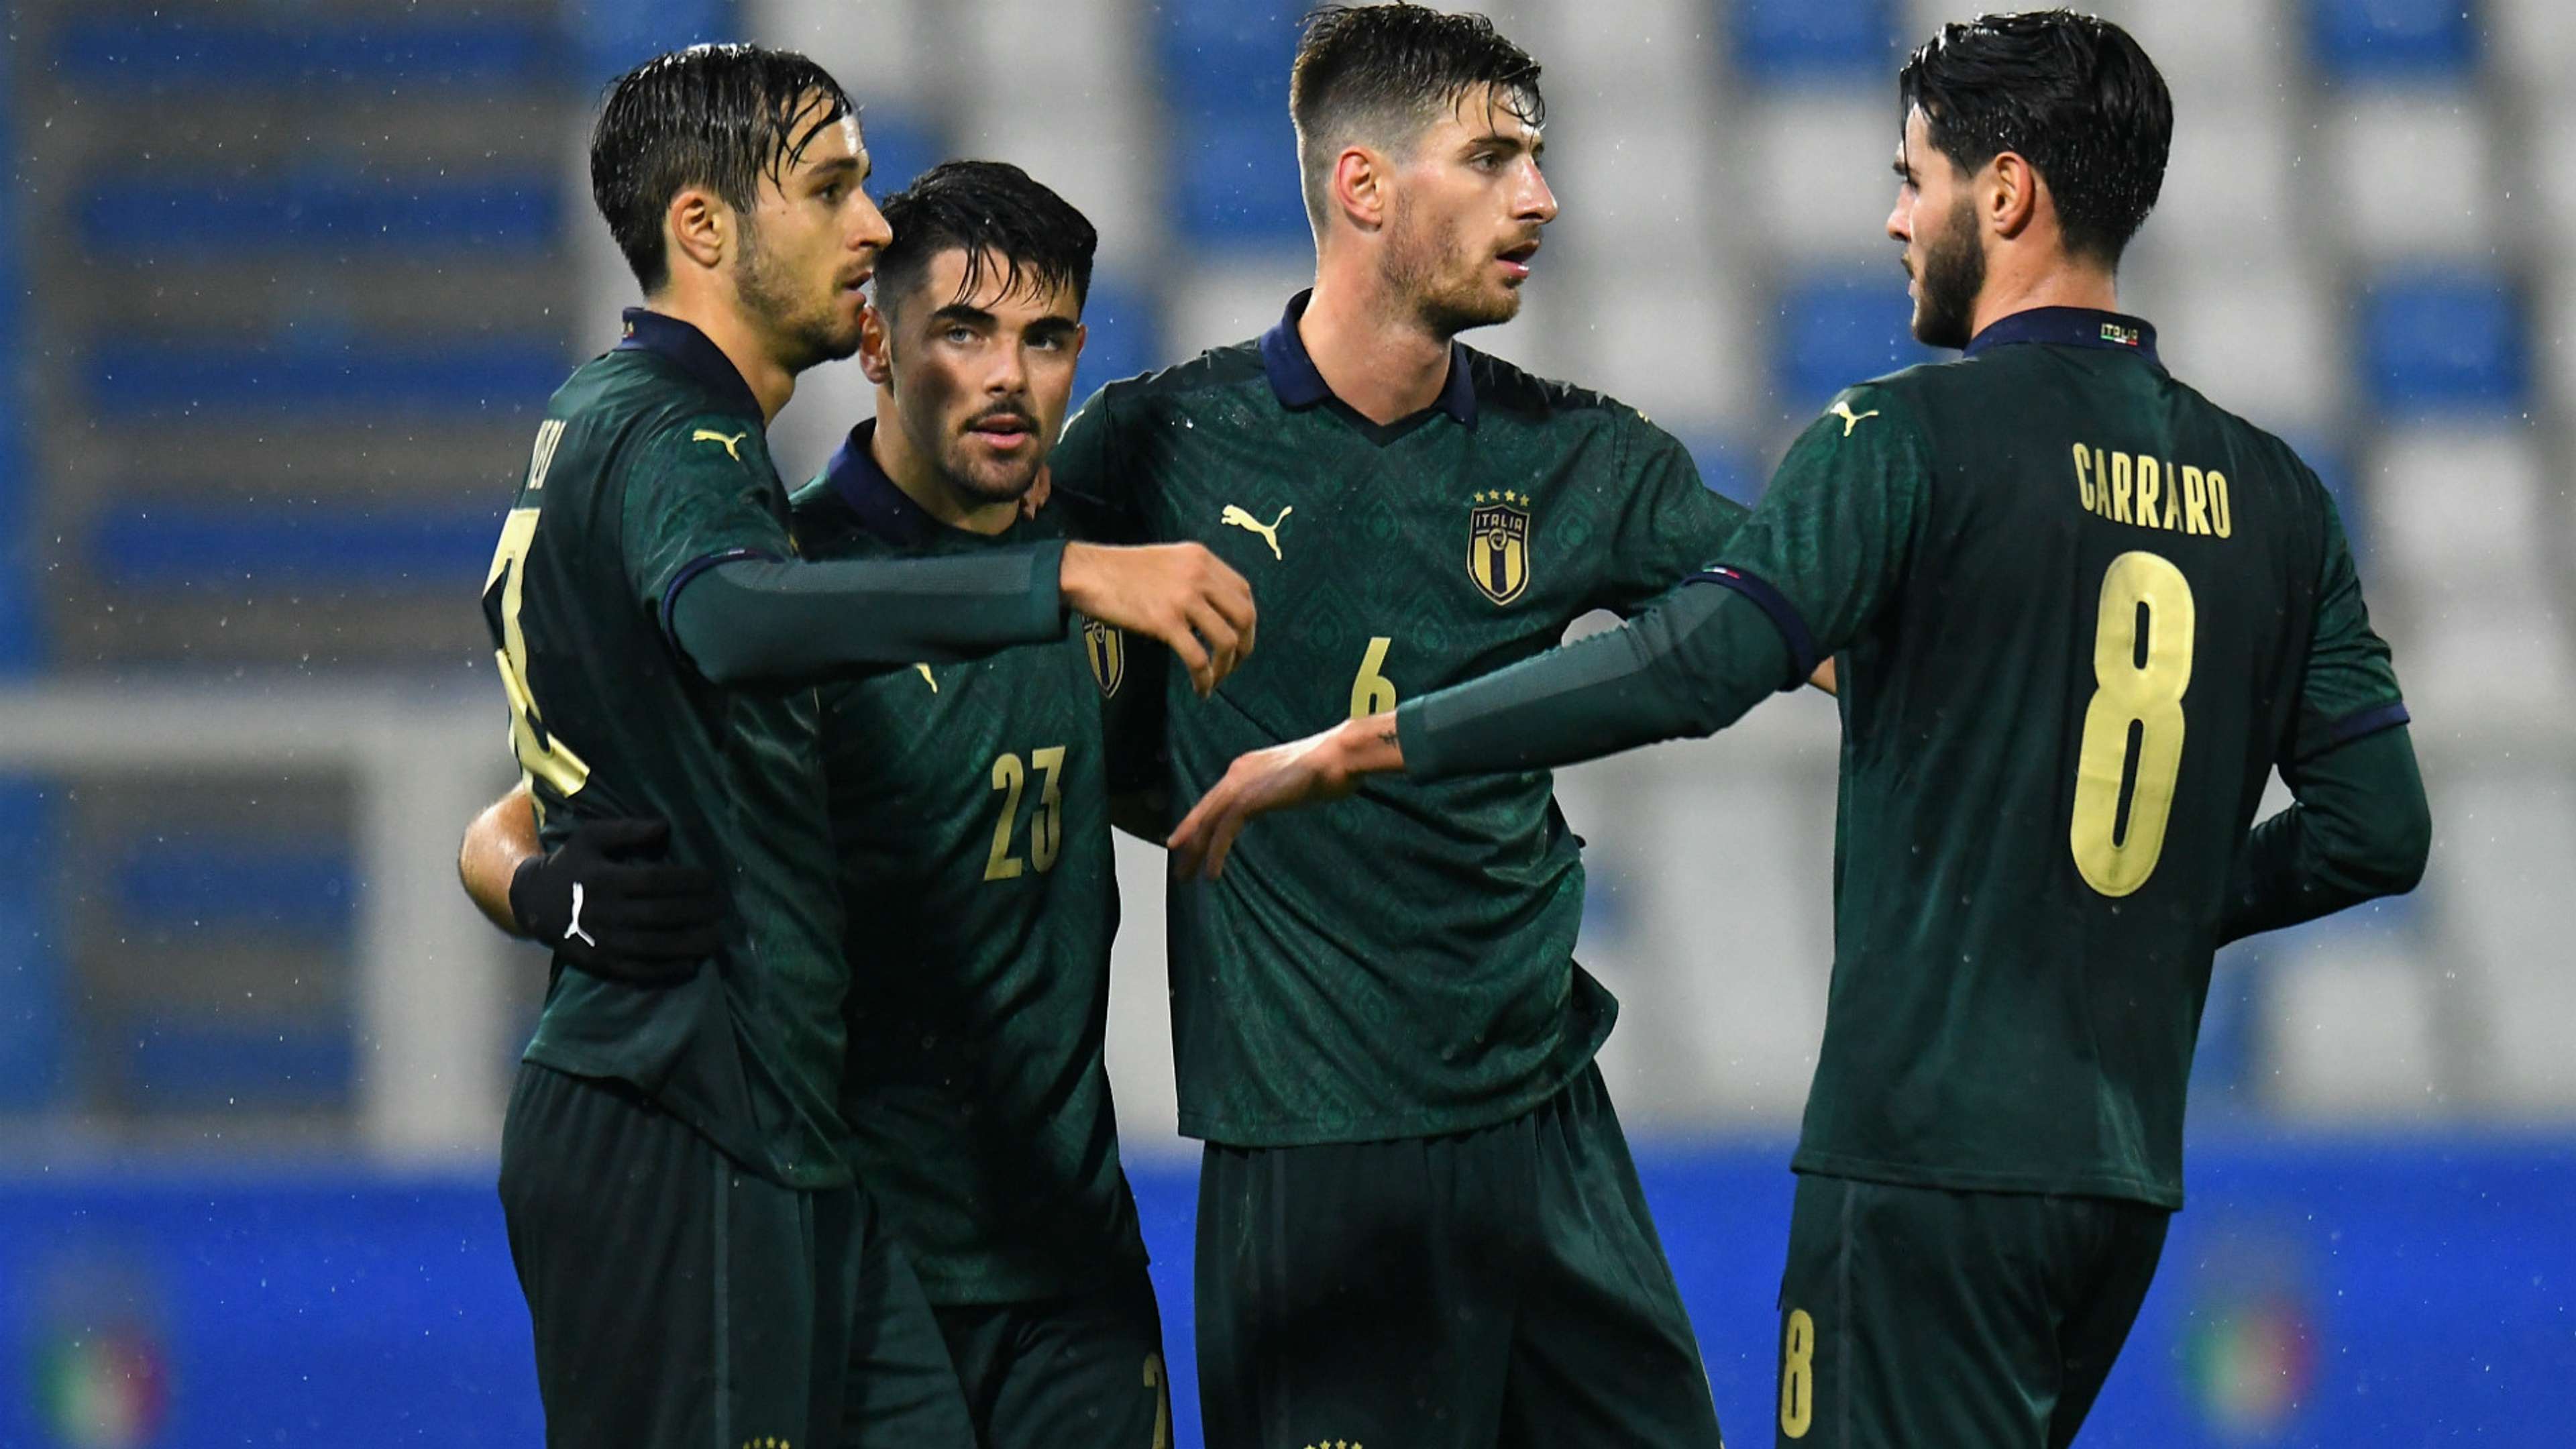 Italy Under 21 celebrates goal against Iceland